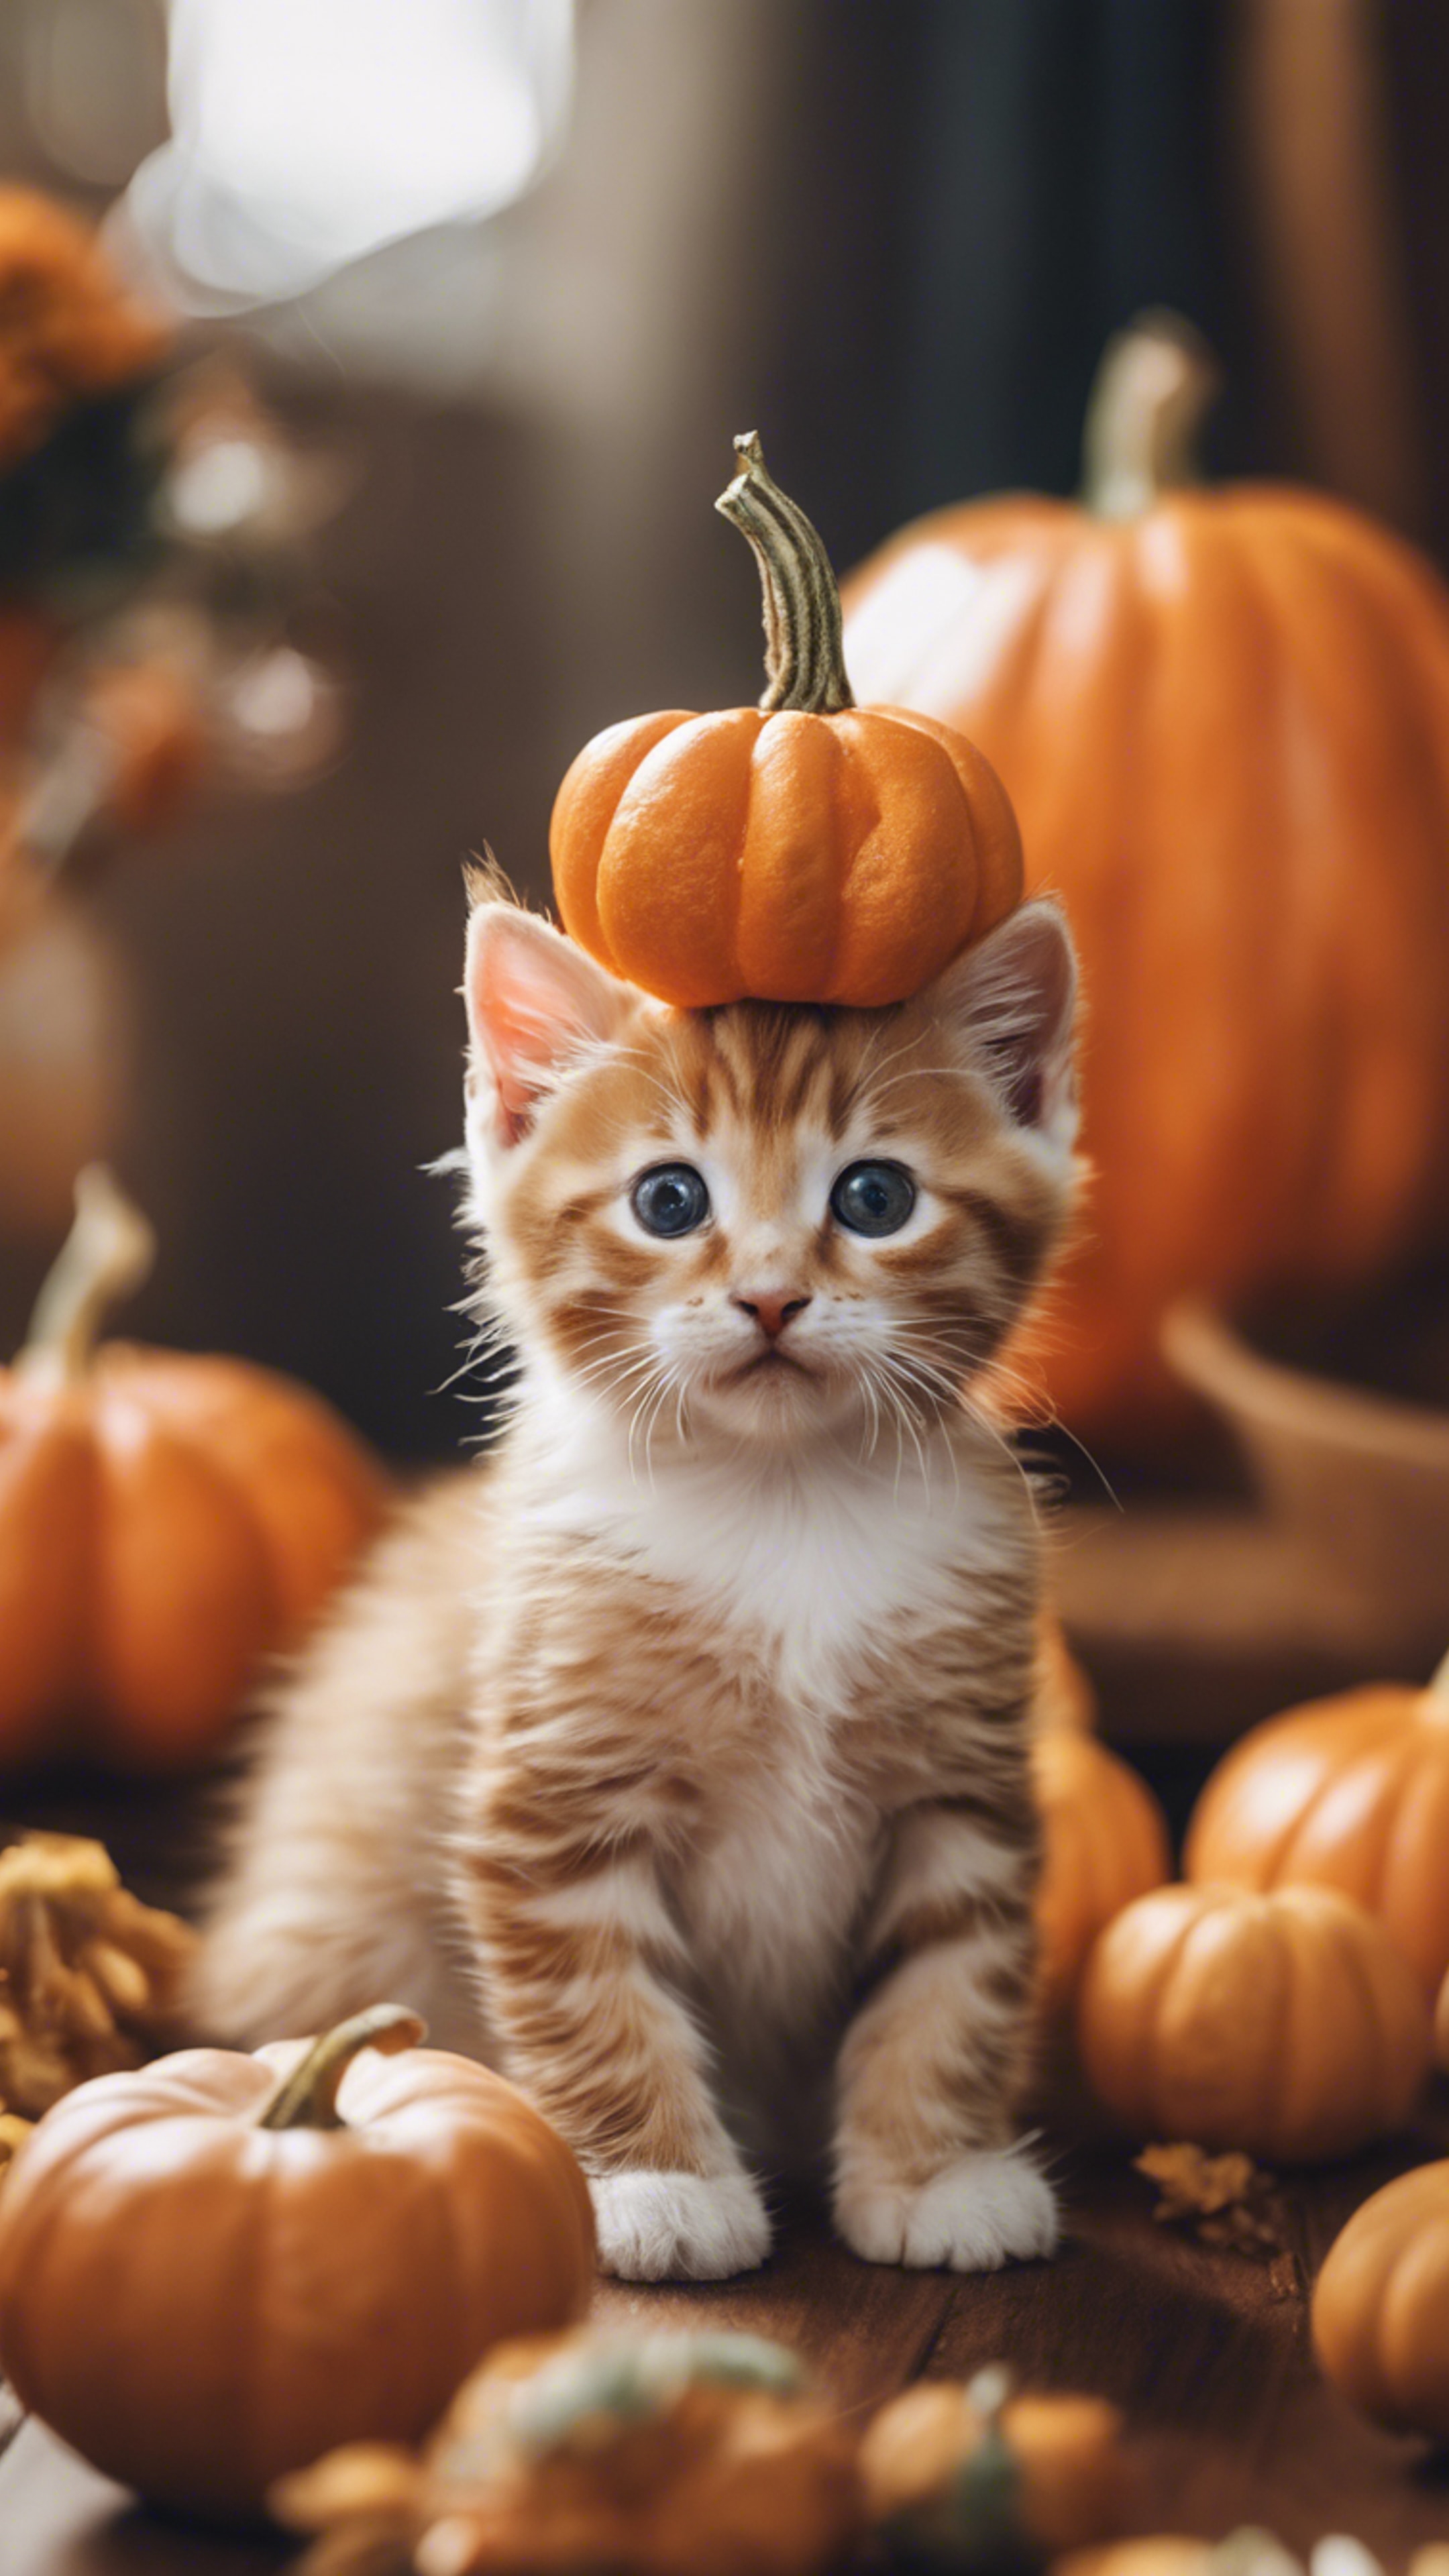 An orange tabby kitten dressed up as a tiny pumpkin for Halloween festivities. Tapet[a5205dadd28d41bcbdef]